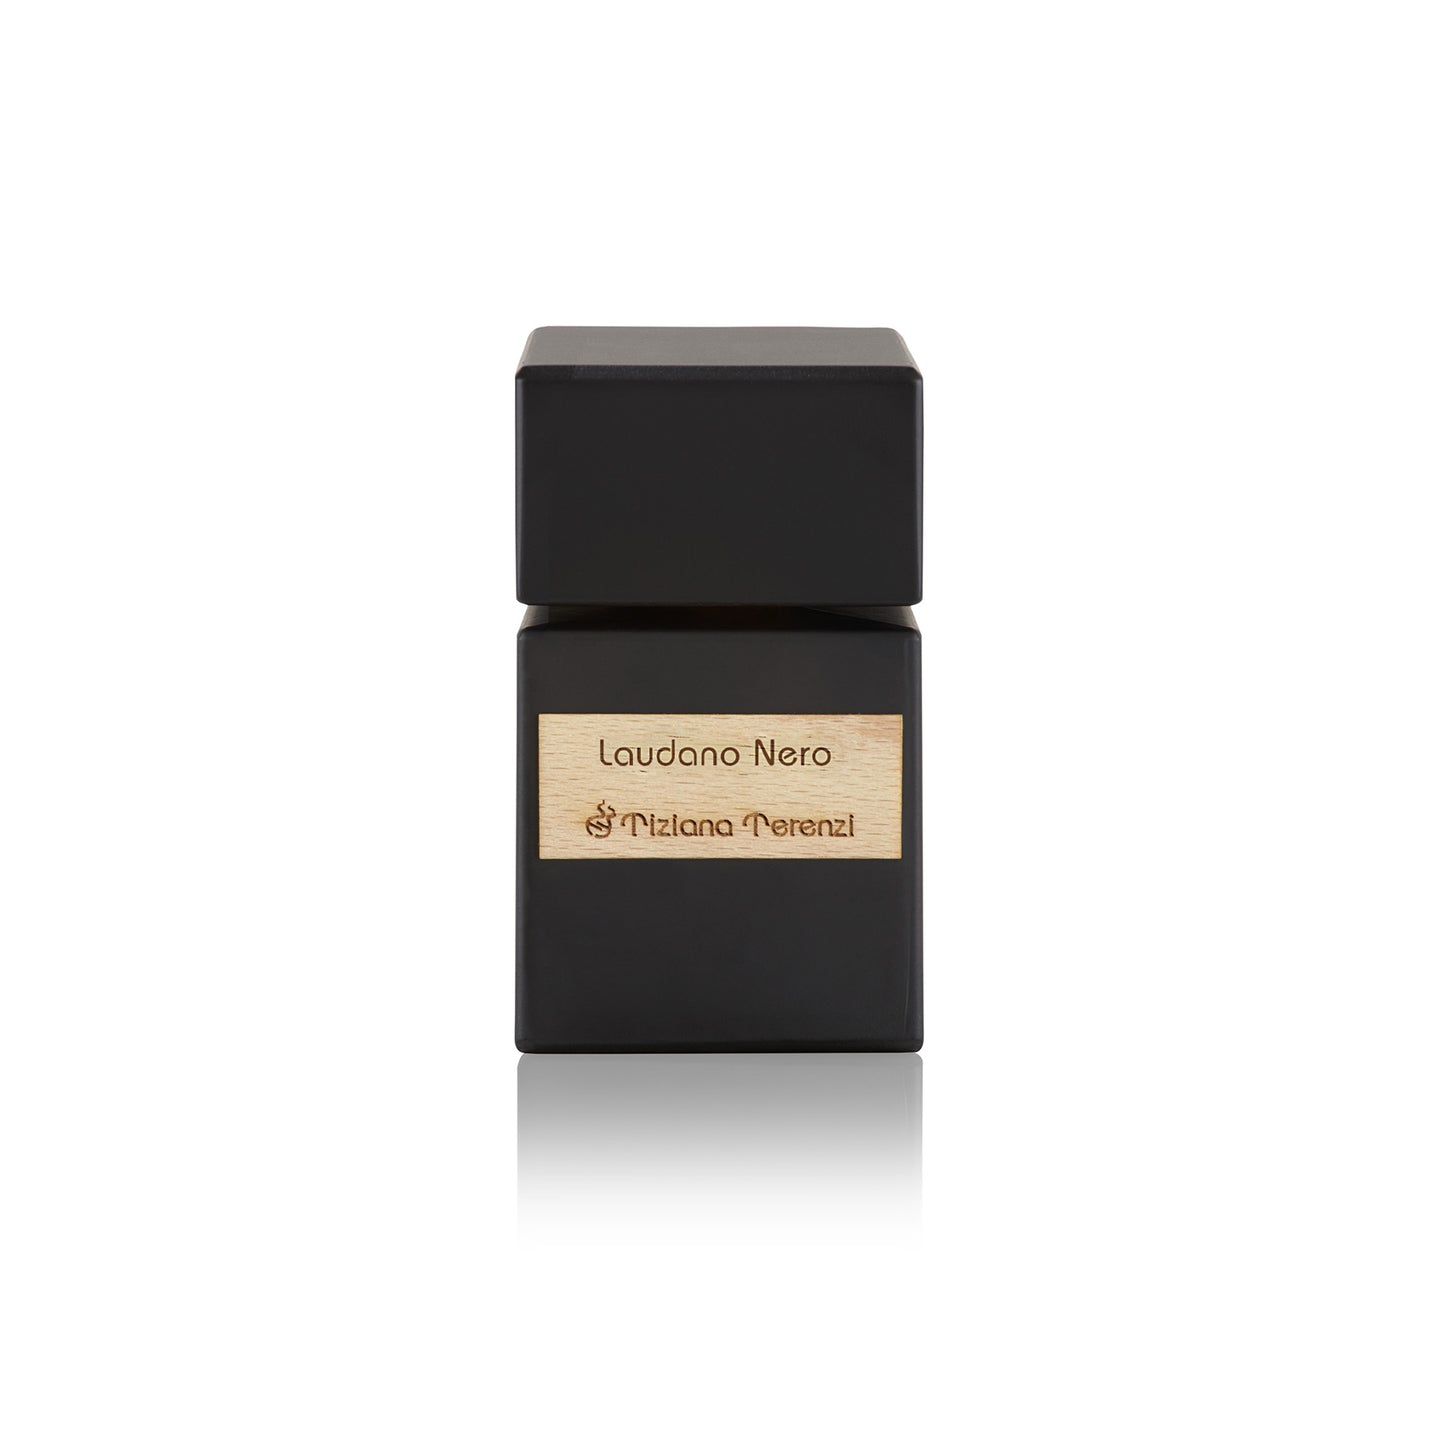 Laudano Nero 3.4 oz Extrait de Parfum